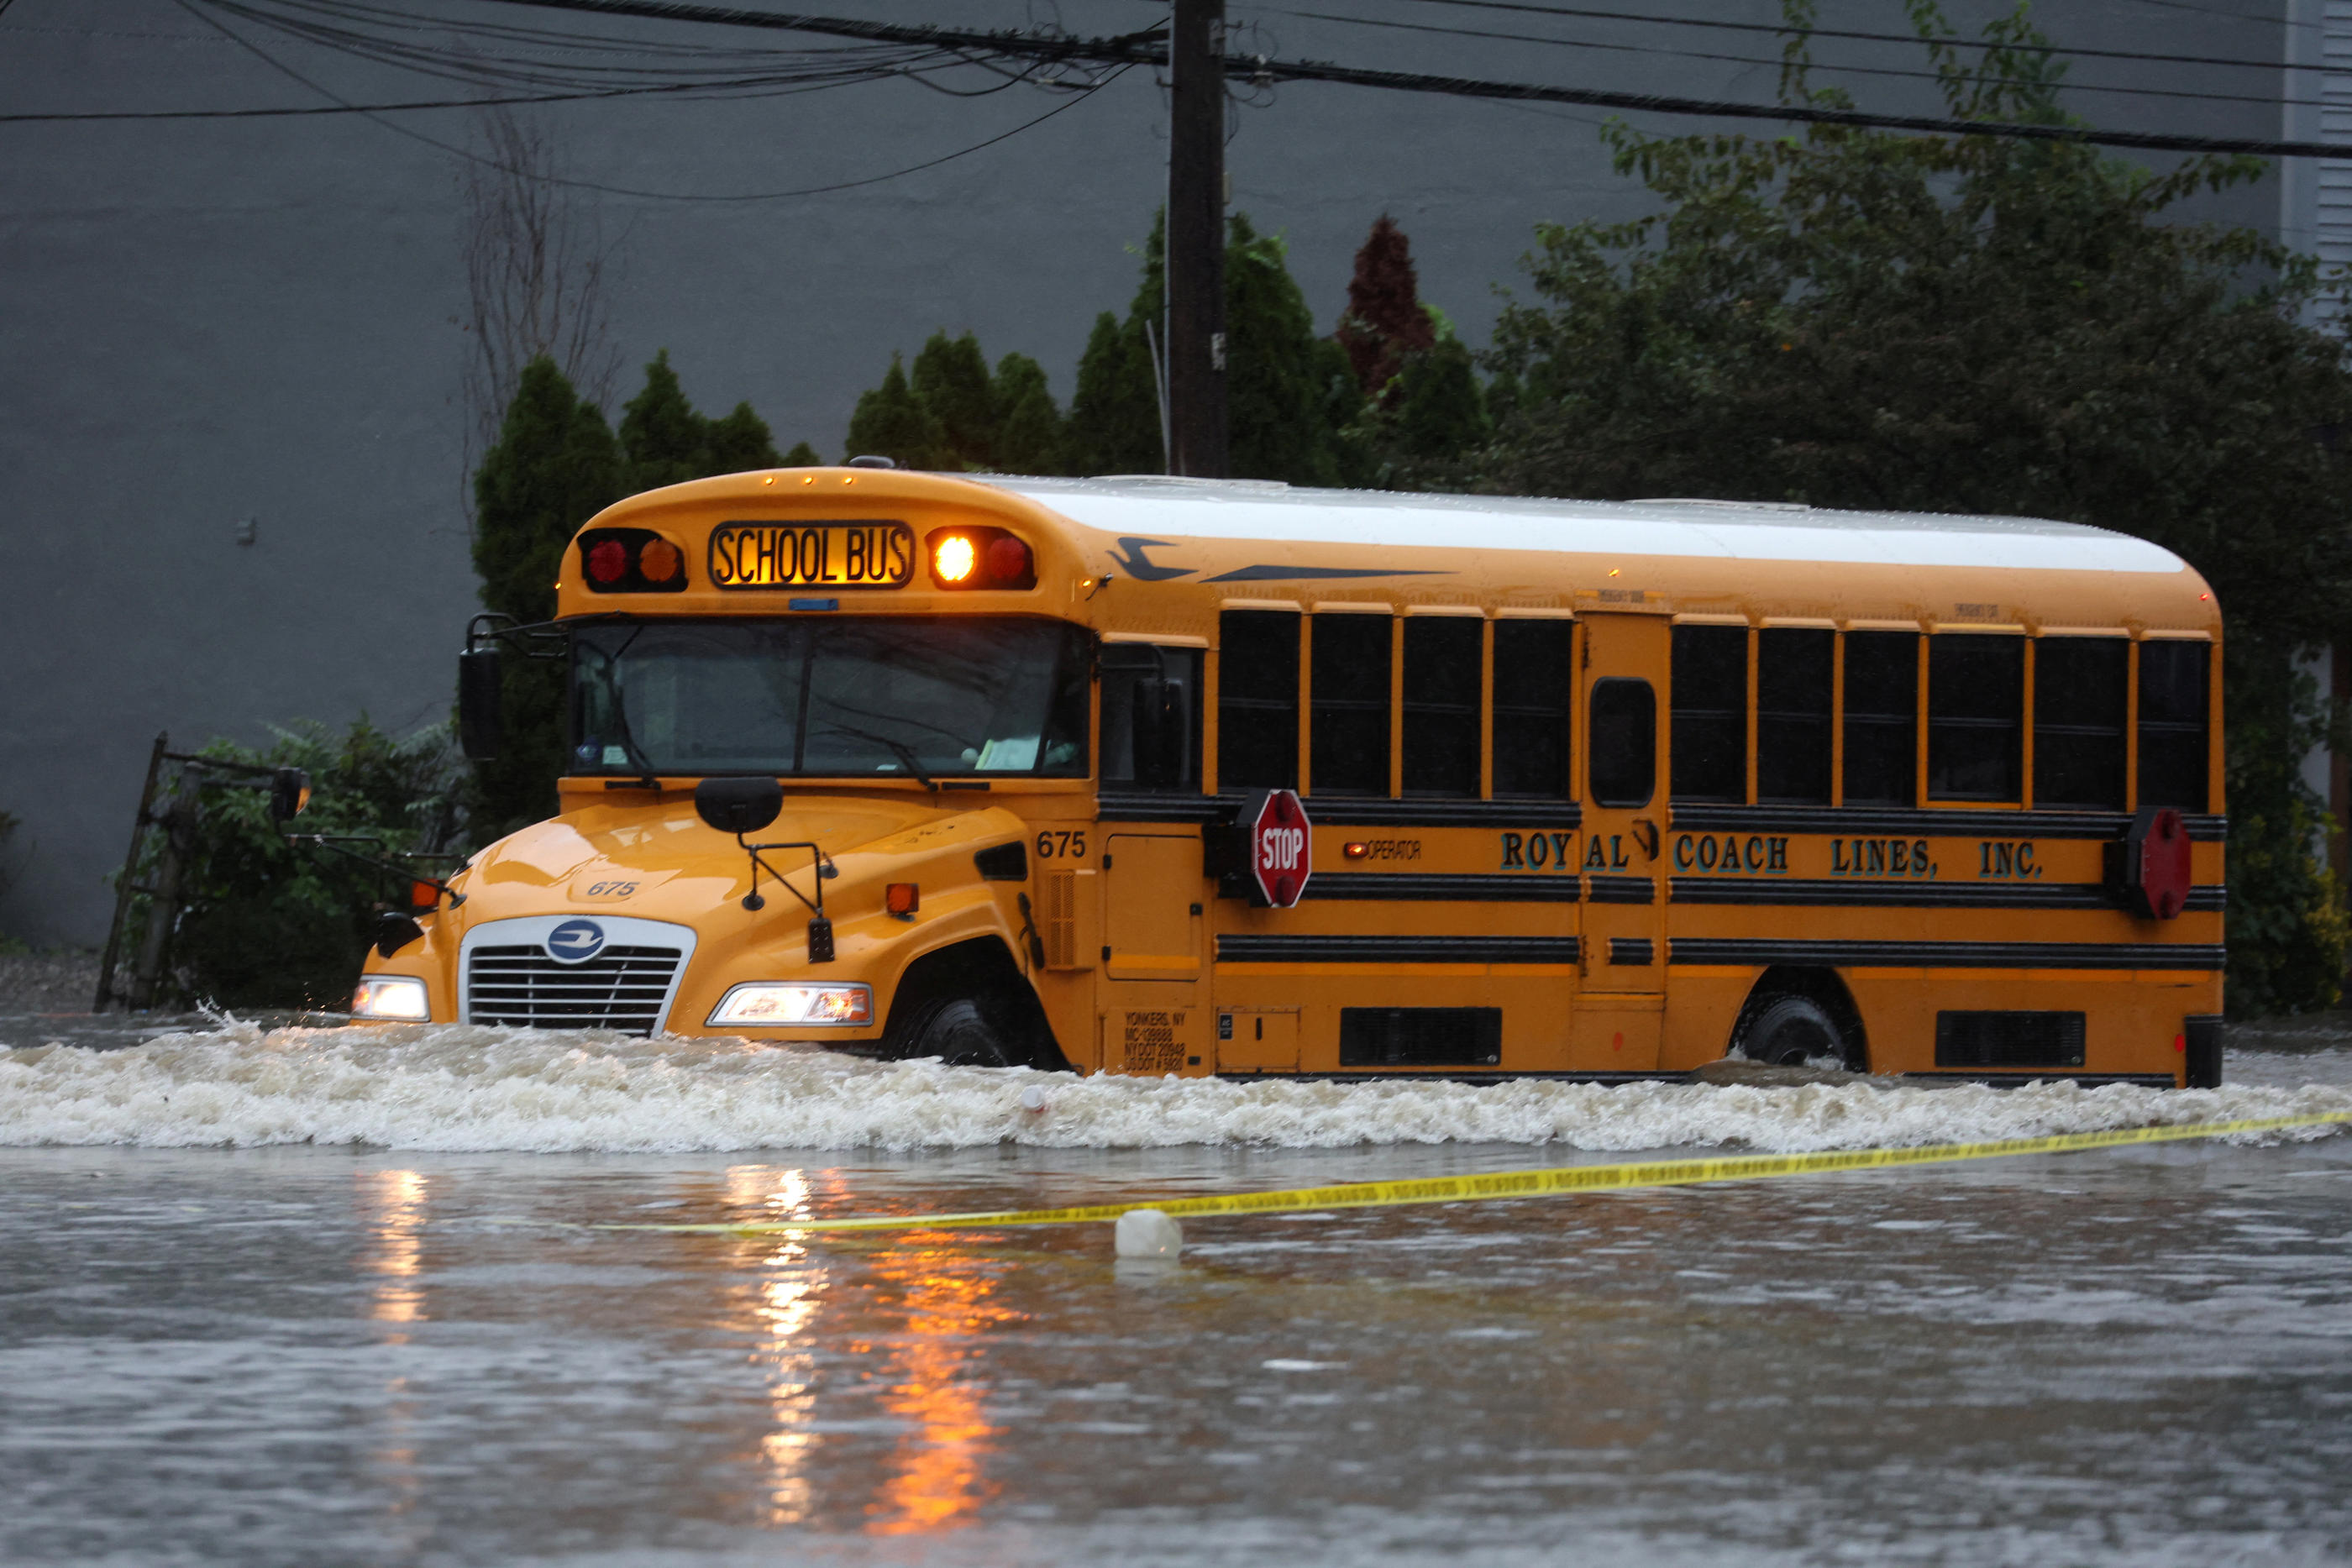 Les bus scolaires sont parvenus à passer dans le quartier de Larchmont, malgré la pluie qui s'est abattue sur New York. REUTERS/Mike Segar